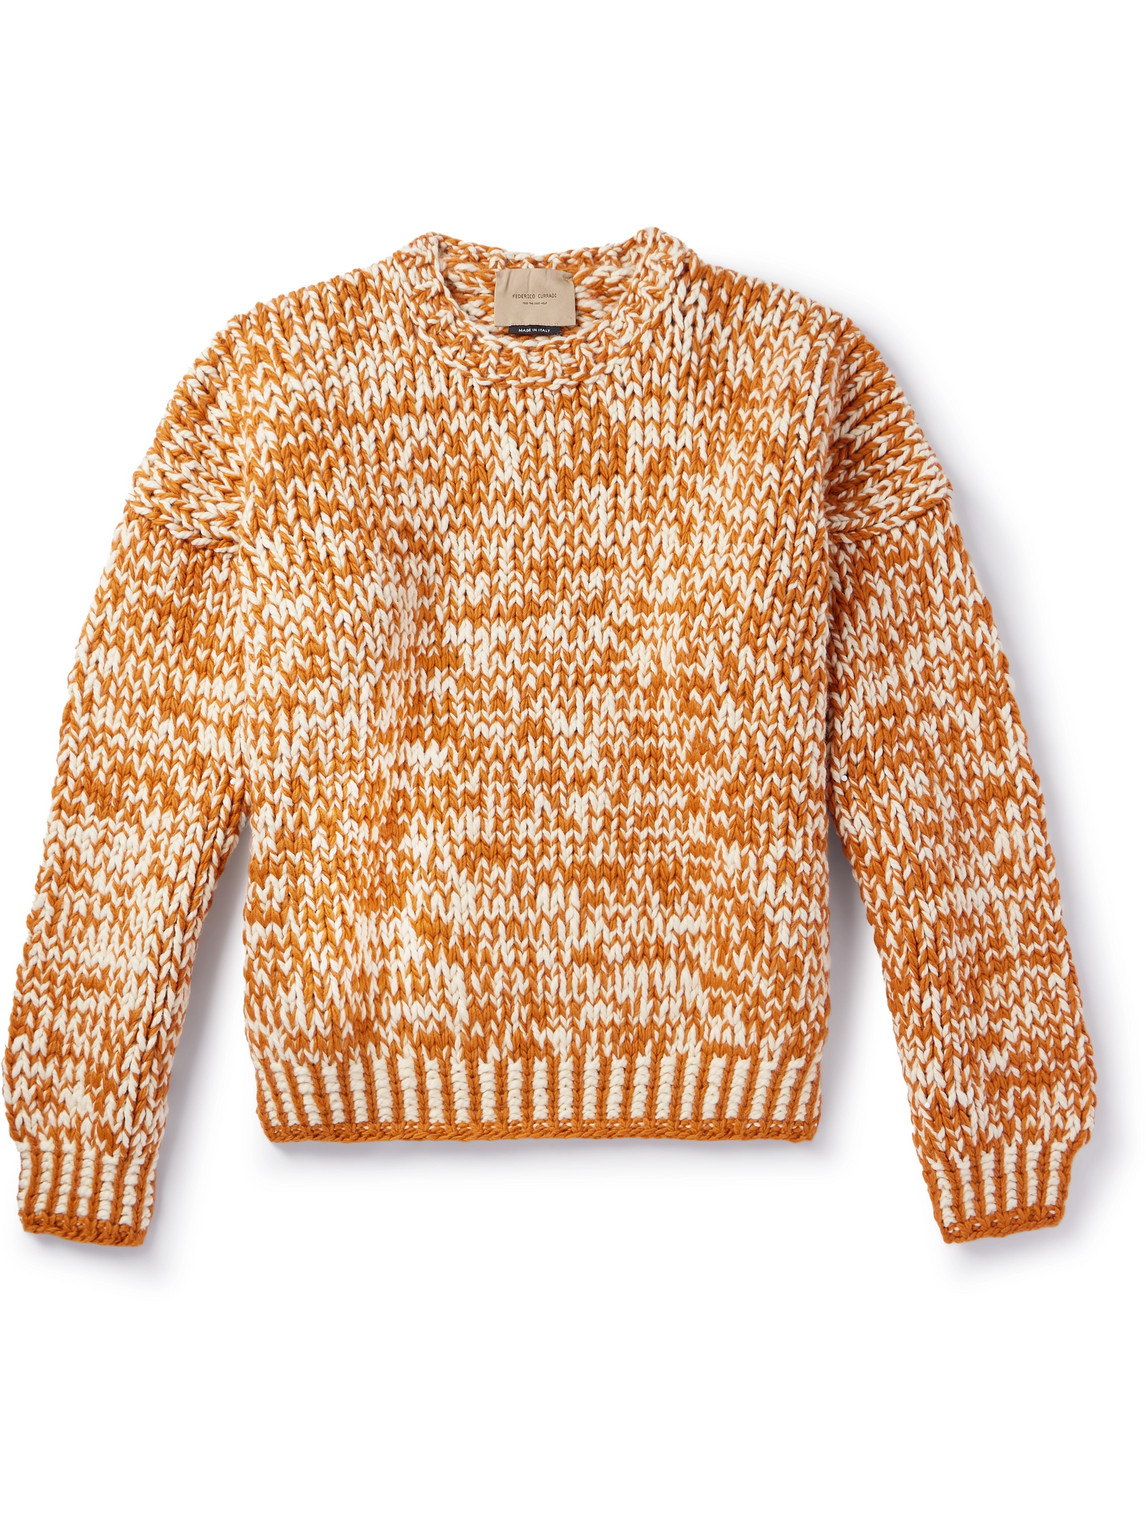 Federico Curradi Two-tone Wool Sweater In Orange